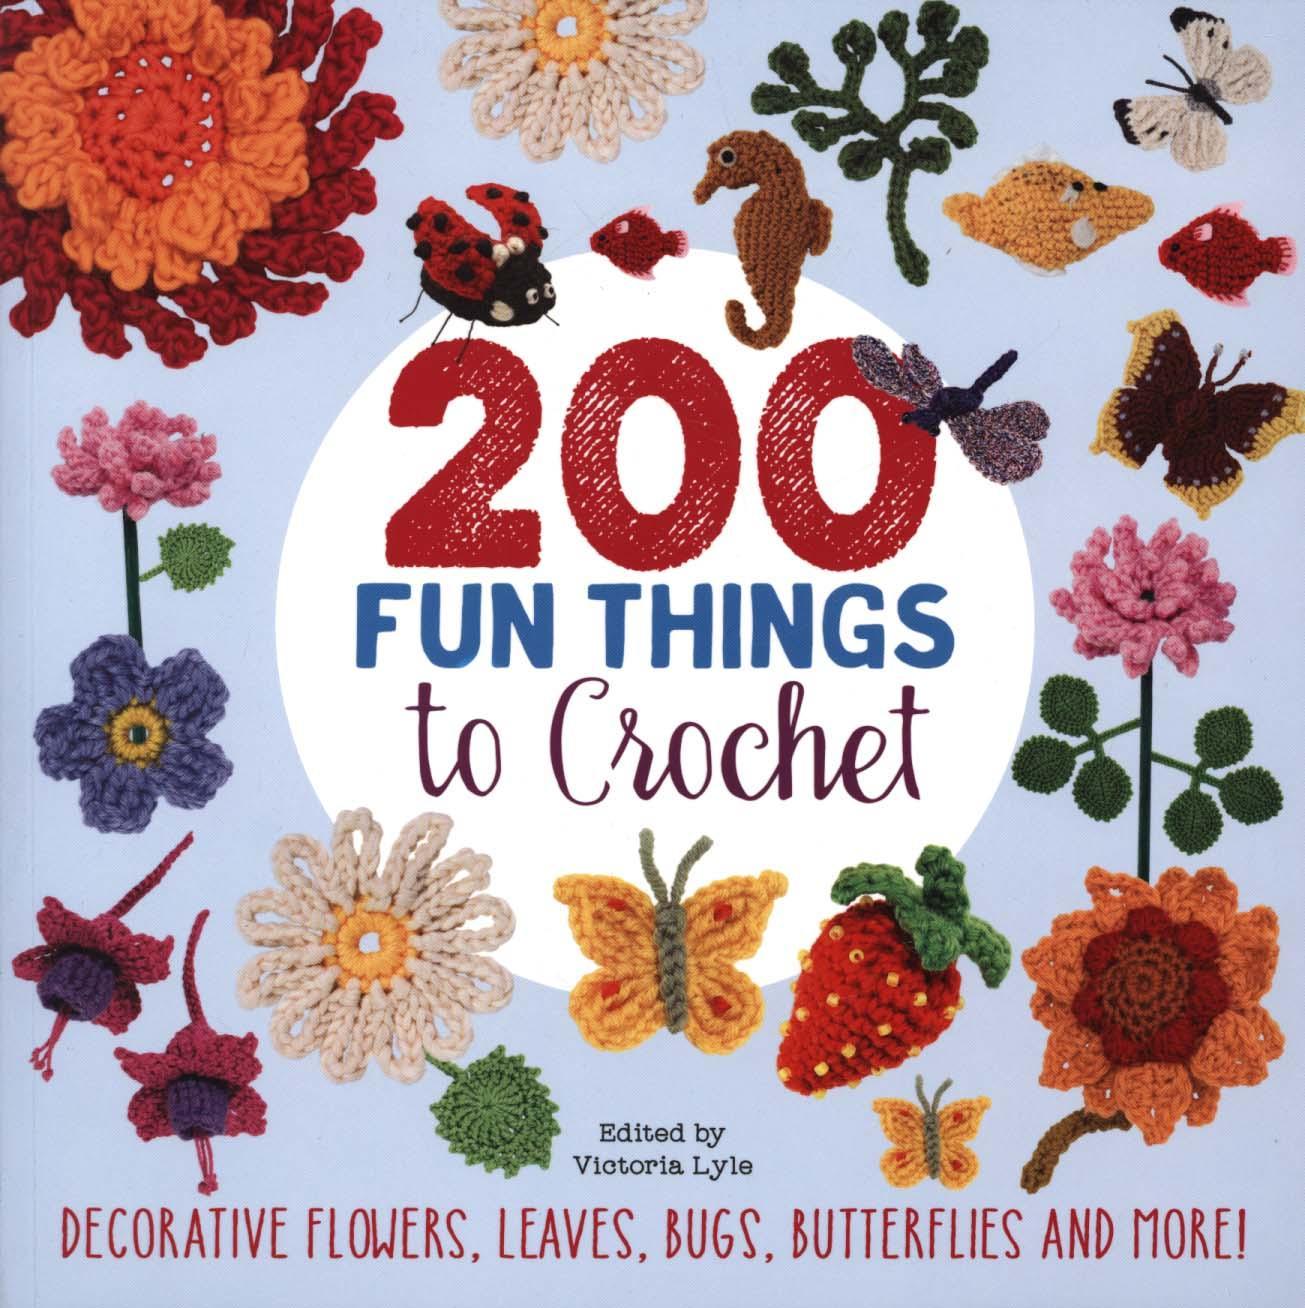 200 Fun Things to Crochet